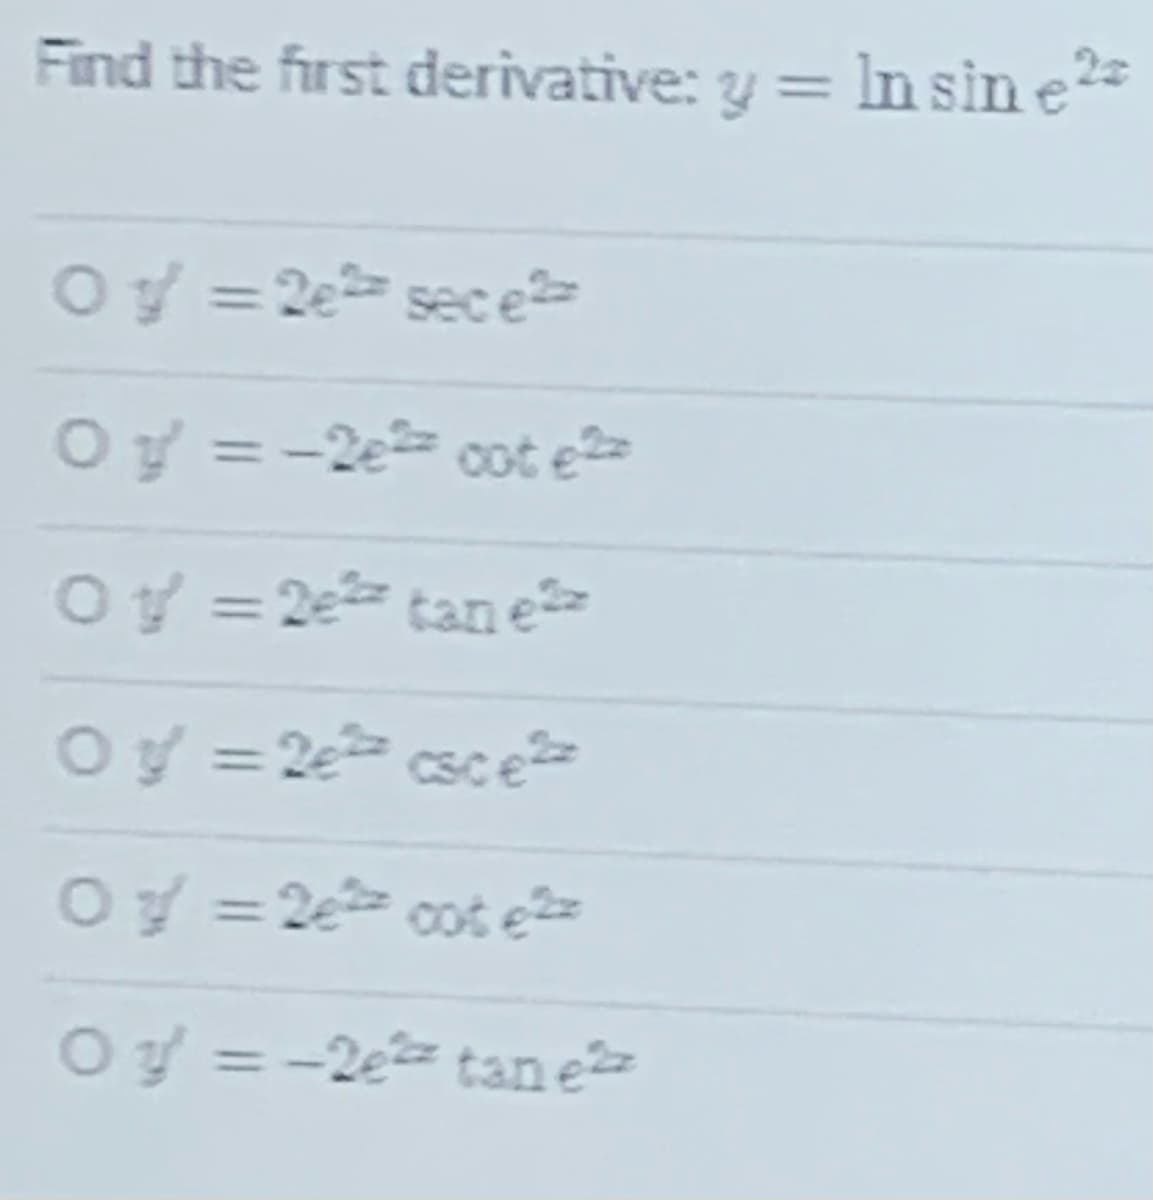 Find the first derivative: y = In sin e*
Oy = 2e sece
Oy = -2e cot e>
Oy = 2e tan e
Oy = 2e csce
%3D
Oy = 2e cot e
Oy = -2e tan e
%3D
